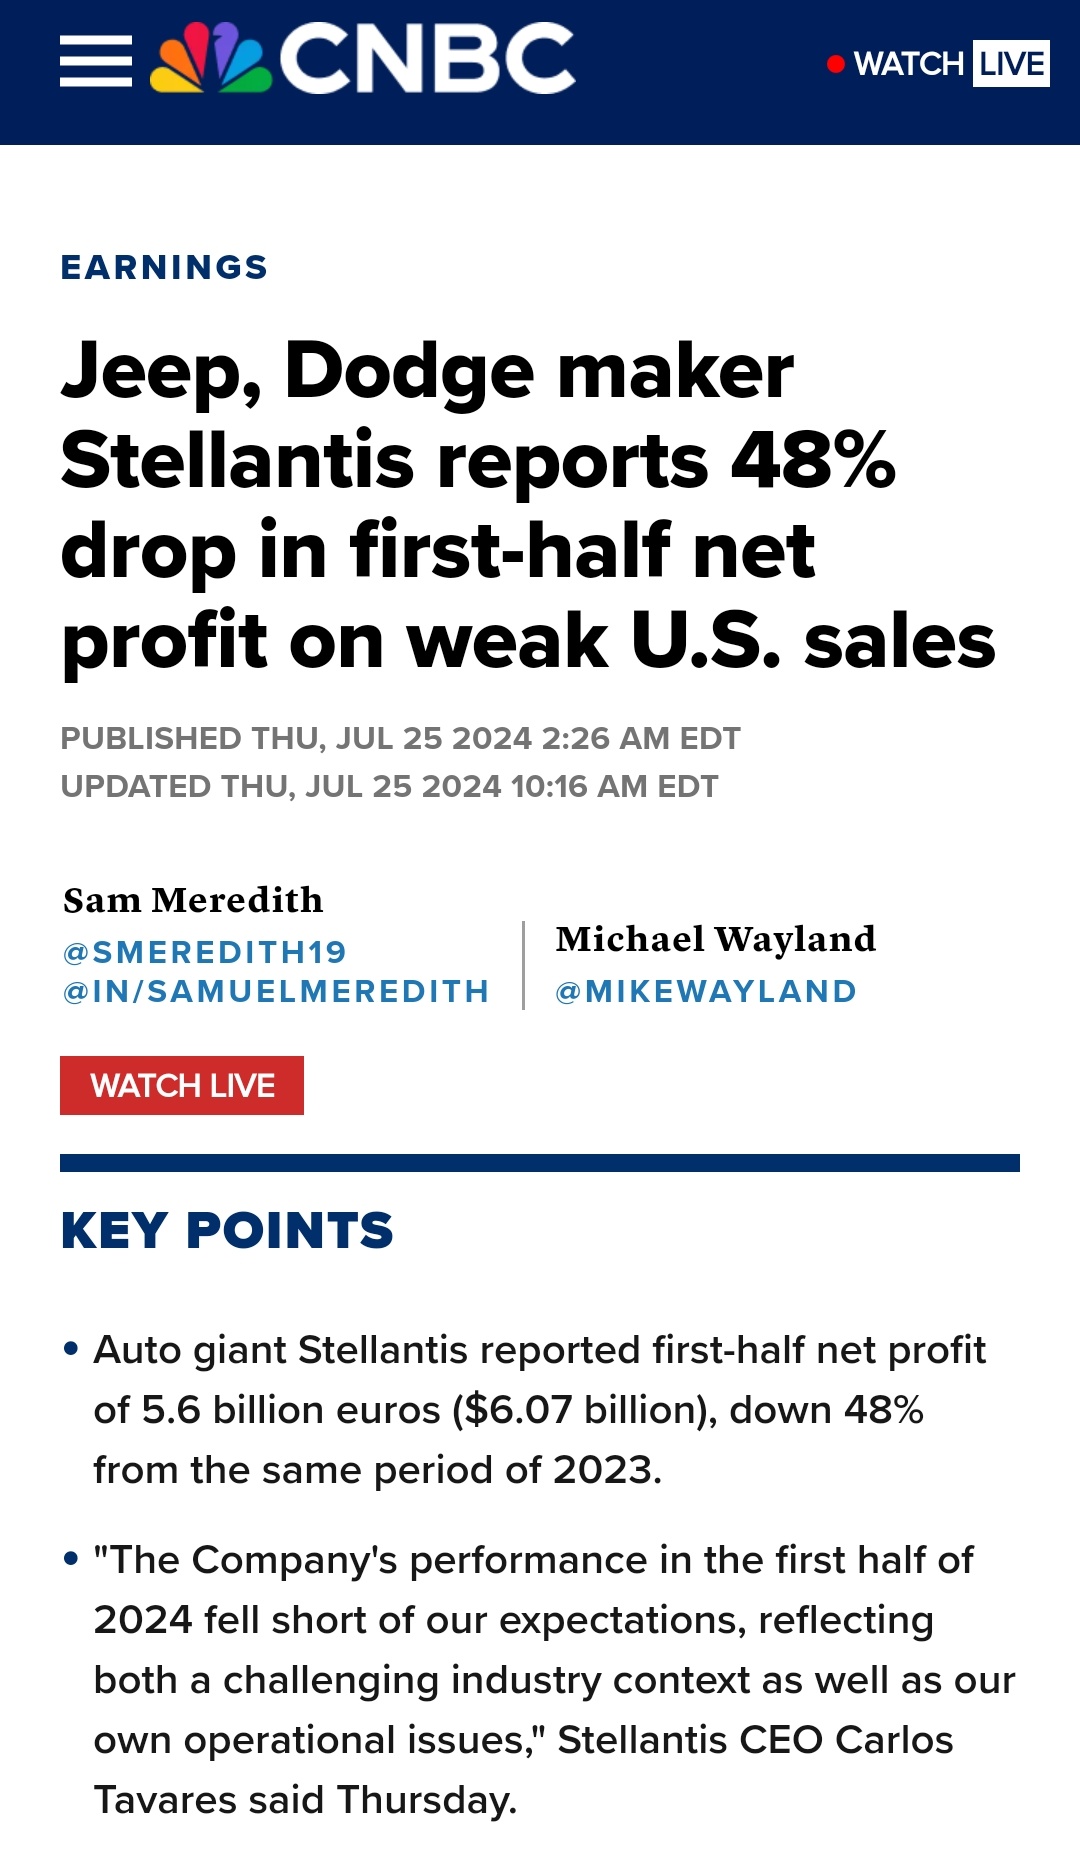 吉普、道奇製造商斯泰蘭蒂斯報告上半年淨利下跌 48%